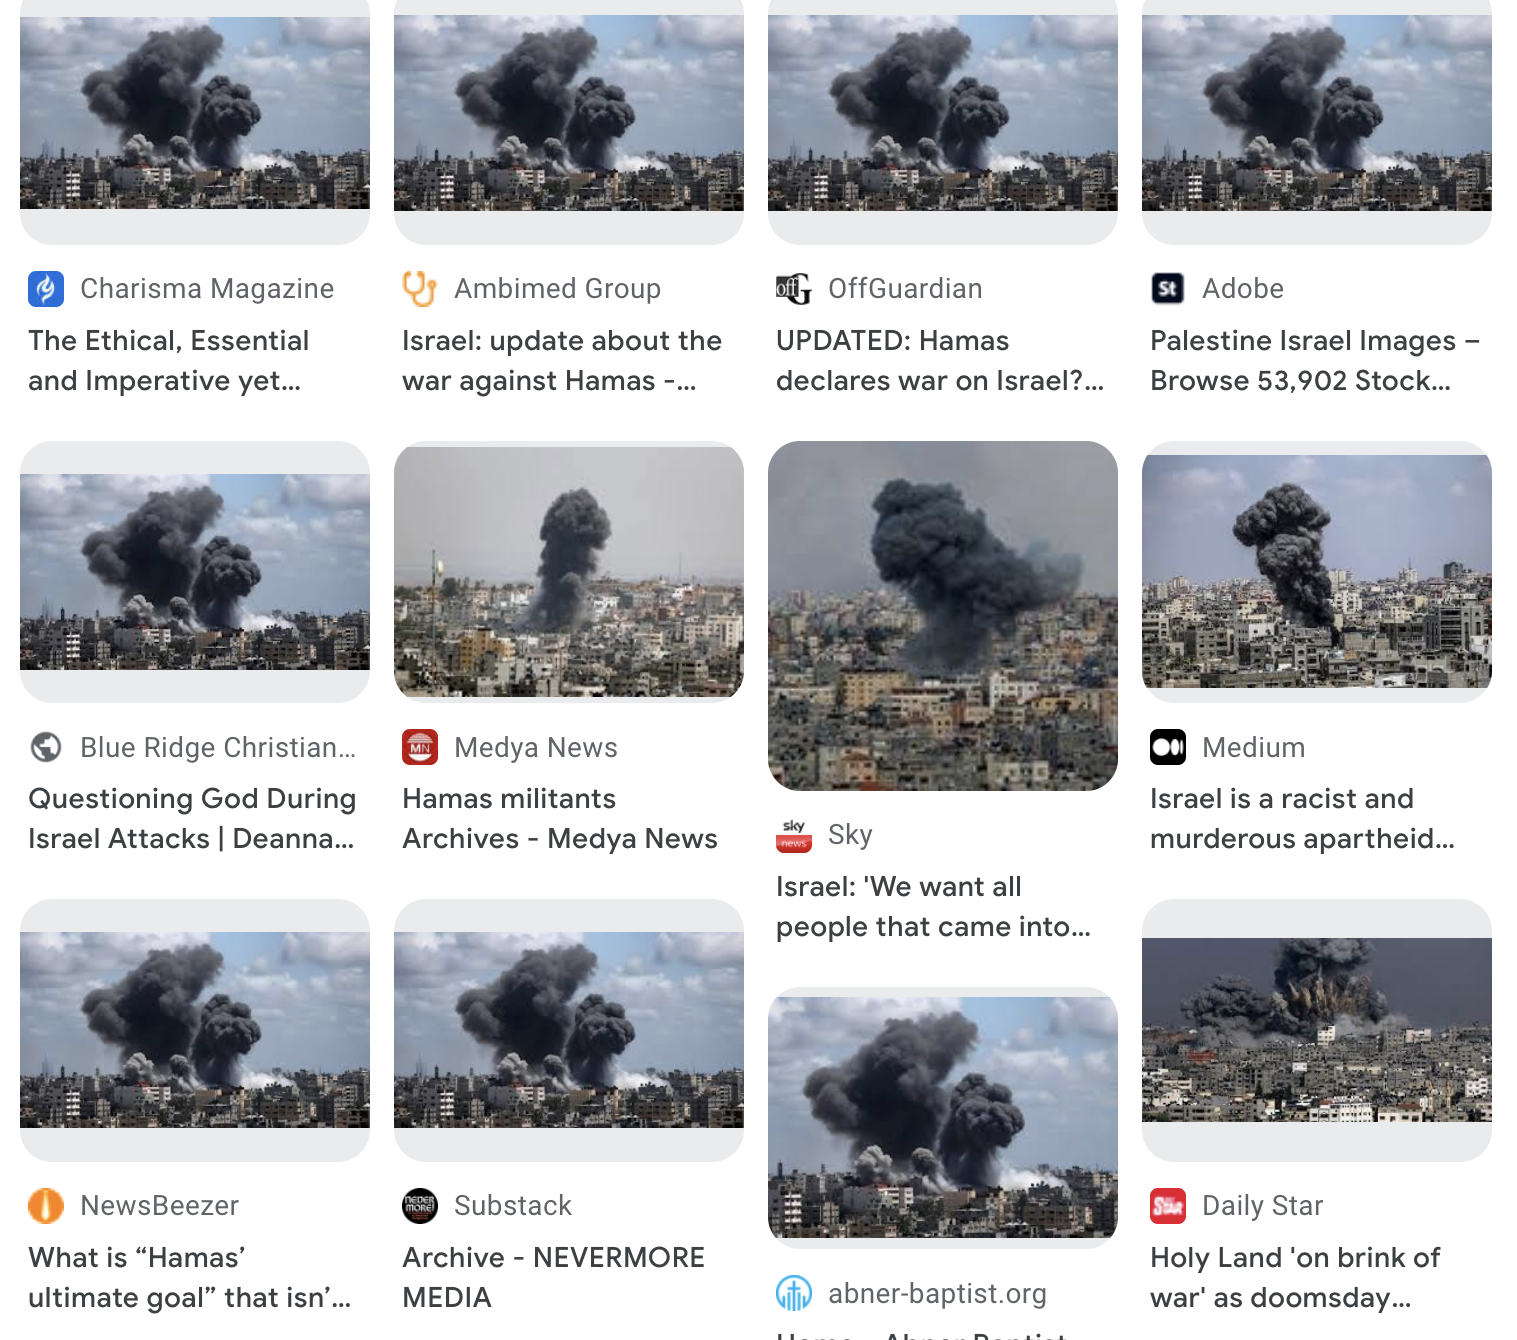 Adobe vende immagini generate dall'intelligenza artificiale della guerra tra Israele e Hamas che vengono spacciate per vere nei notiziari-3